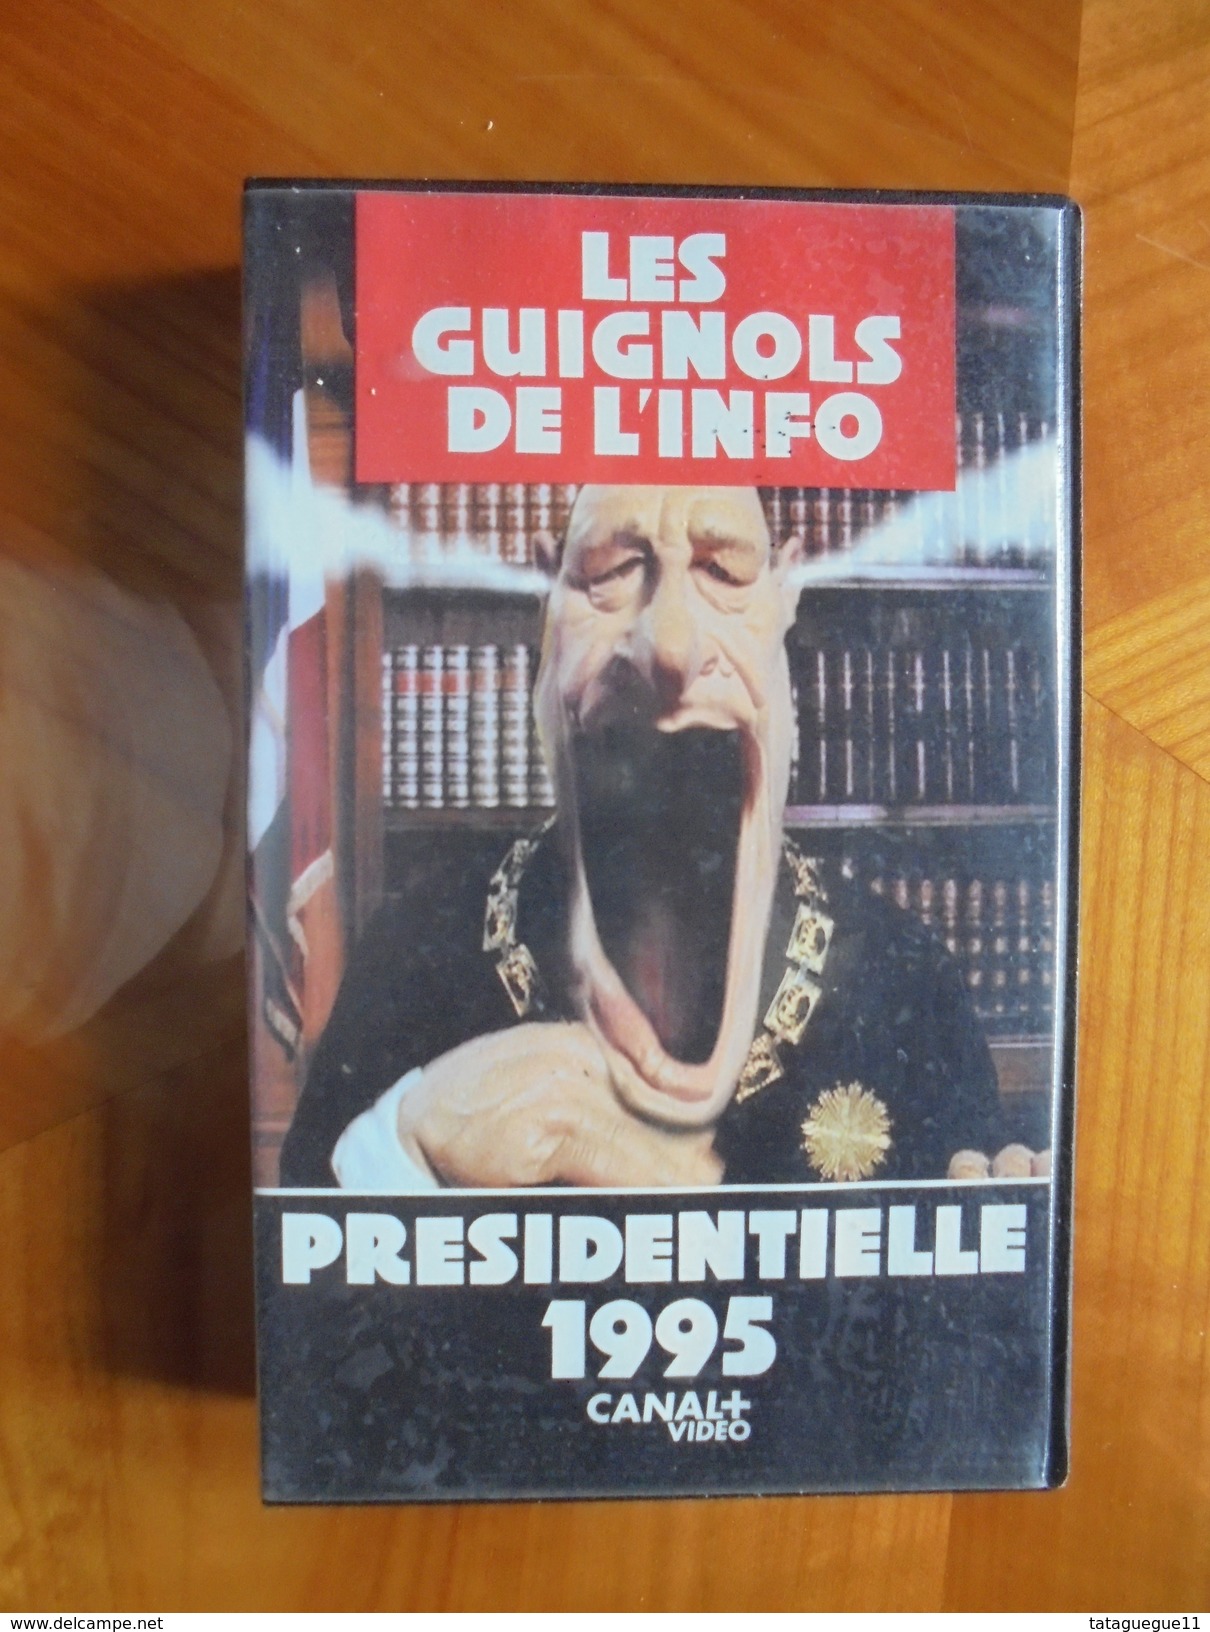 Ancien - Cassette Vidéo LES GUIGNOLS DE L'INFO Présidentielle 1995 - Series Y Programas De TV